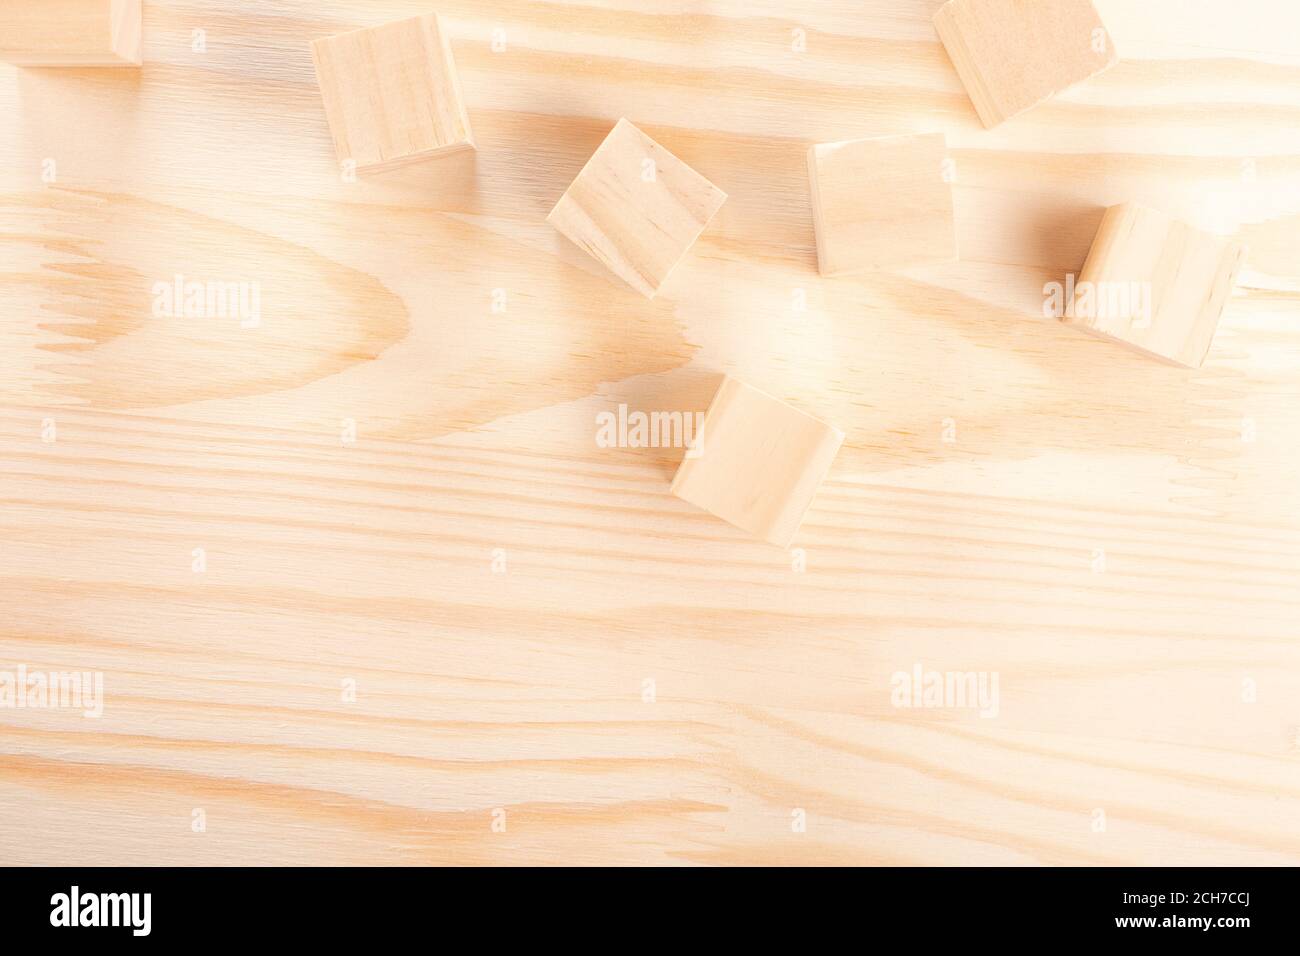 cubos de madera sobre un fondo de madera clara. fondo de madera cálida. el concepto de creatividad, productos de madera natural, artesanía de madera. Foto de stock